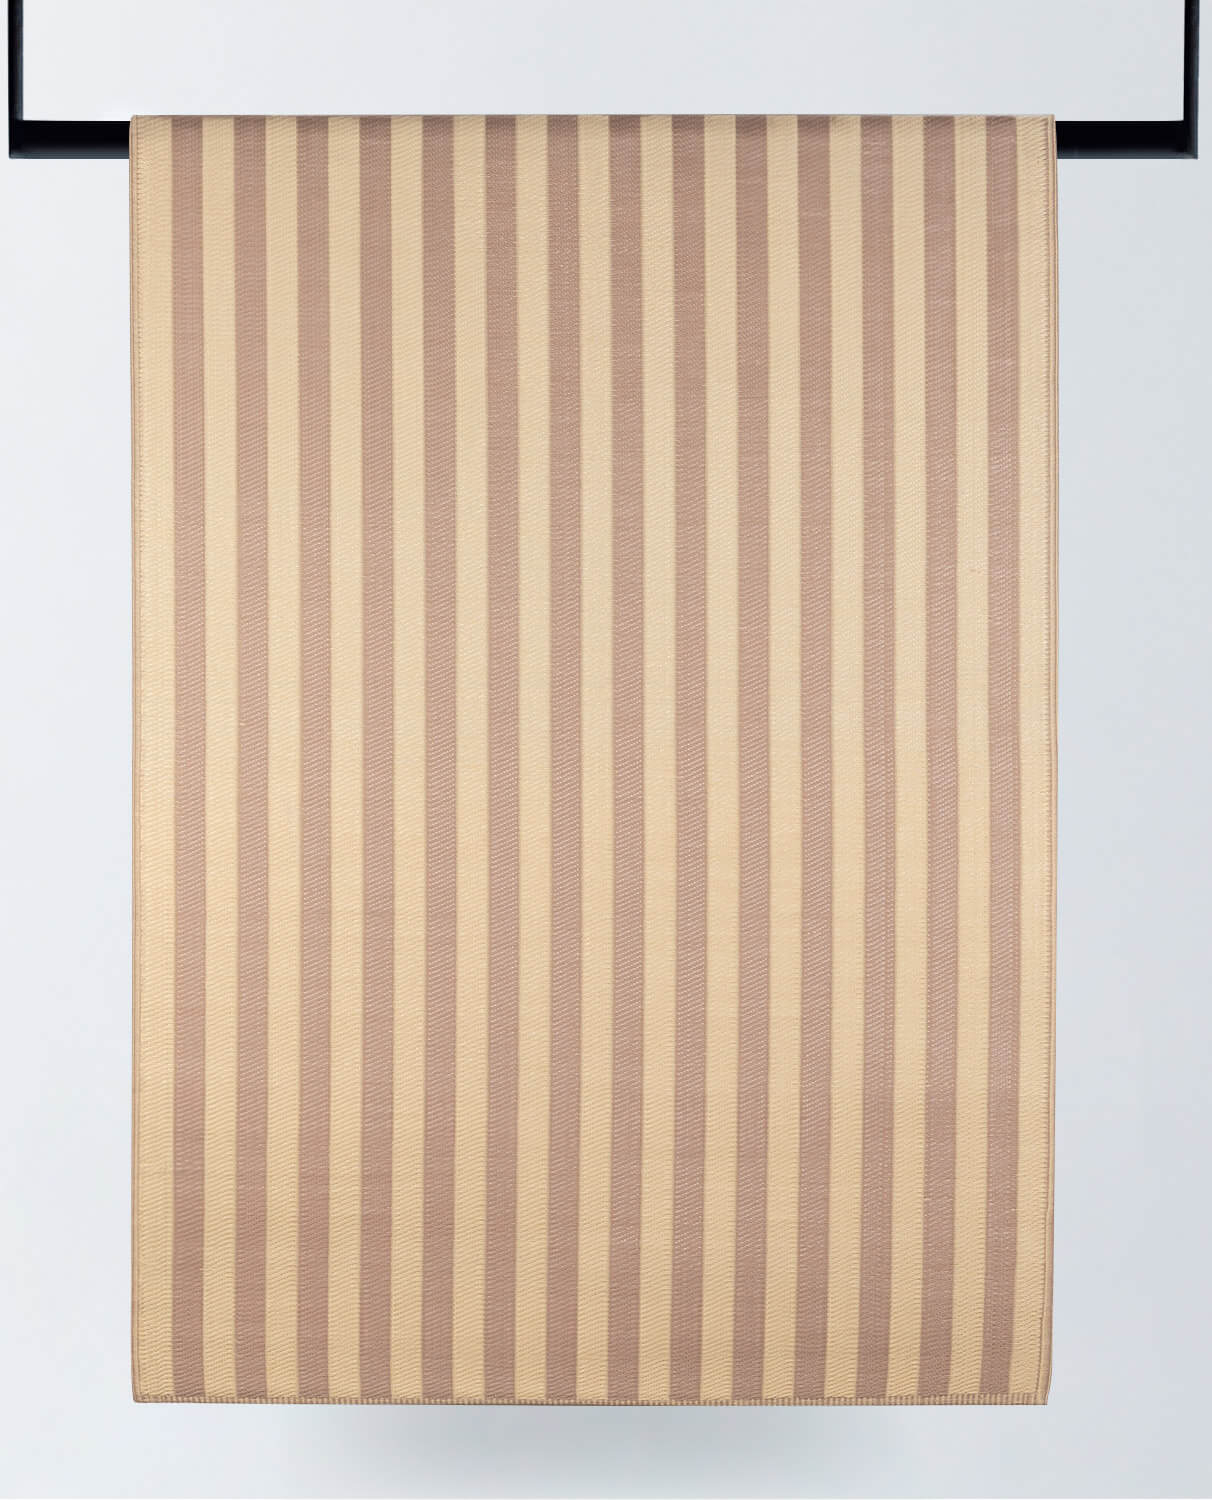 Tappeto per Esterni in Polipropilene (216x151 cm) Cierzo, immagine della galleria 1